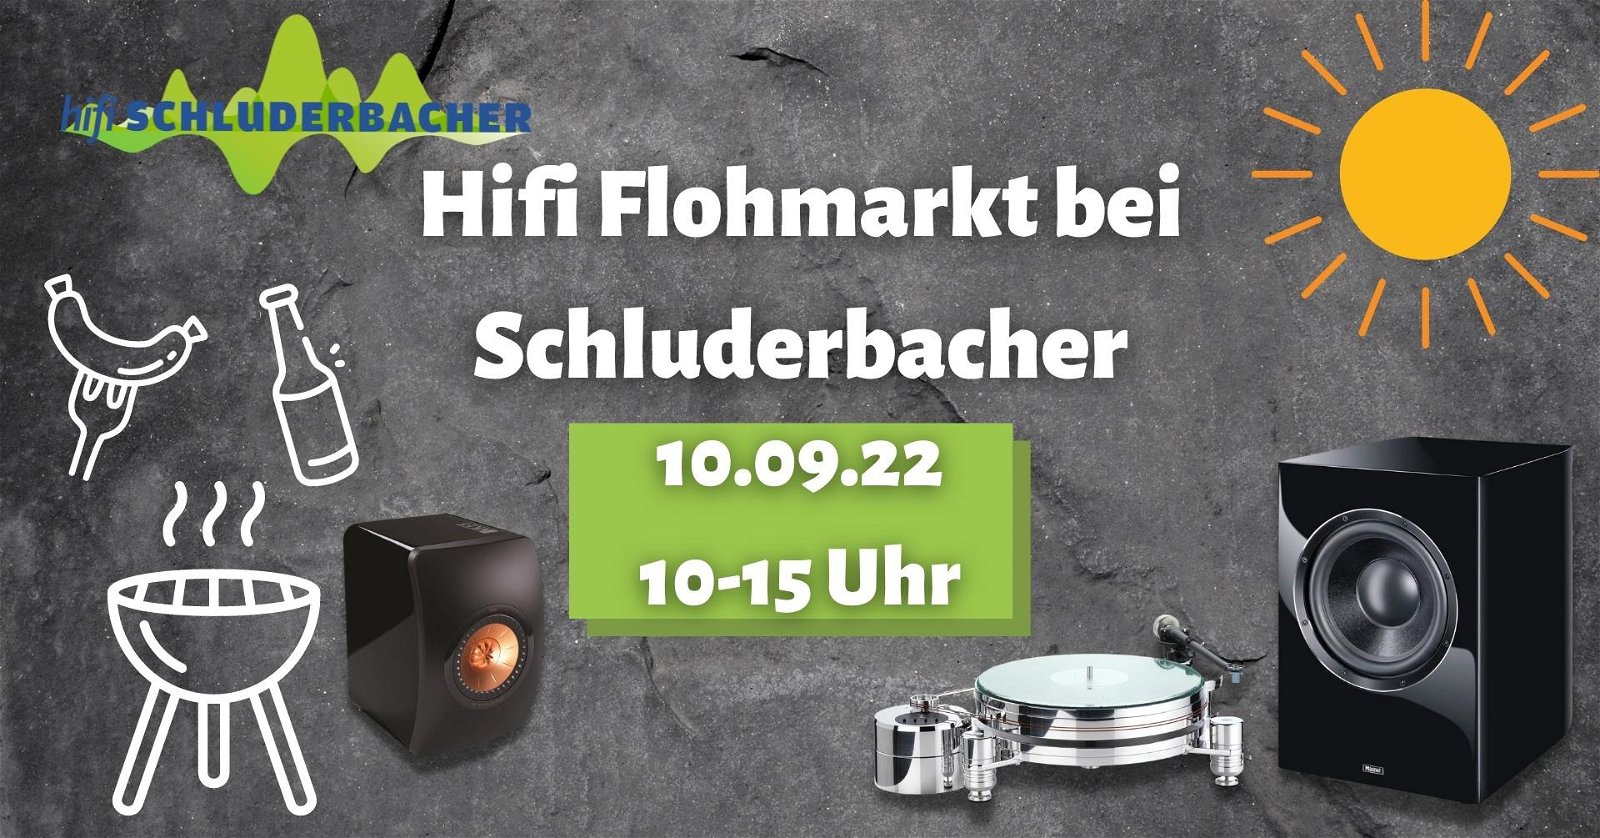 Hifi Flohmarkt bei Schluderbacher